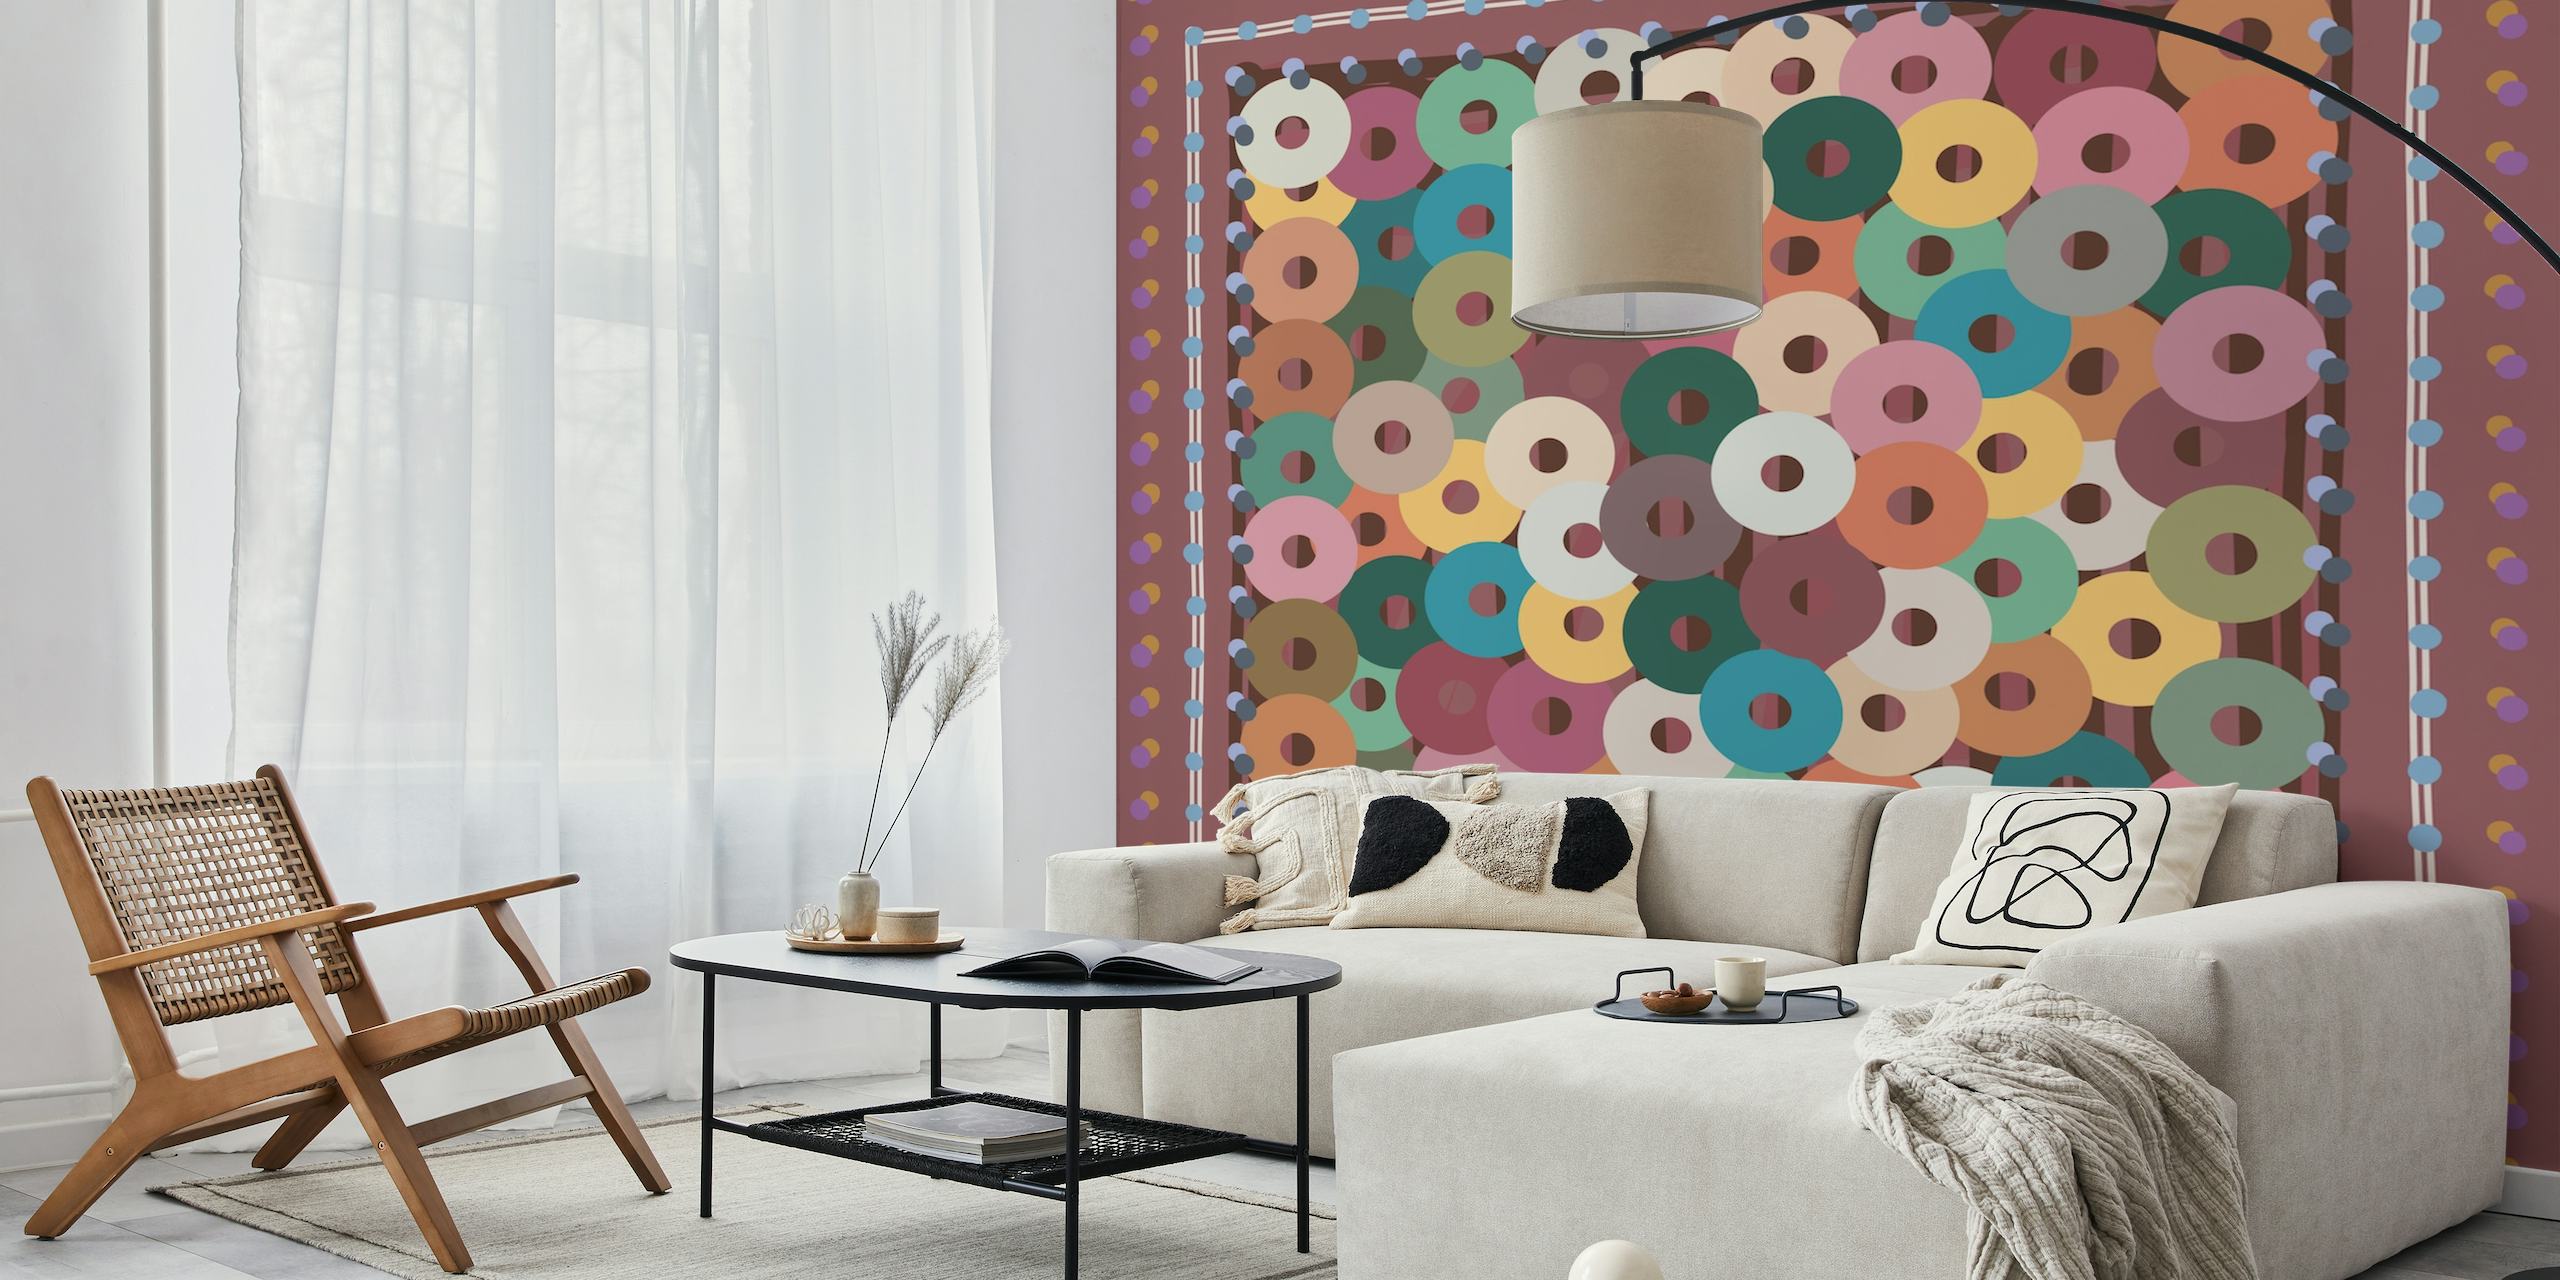 Fotomural de pared con estampado de círculos coloridos y tonos inspirados en la naturaleza